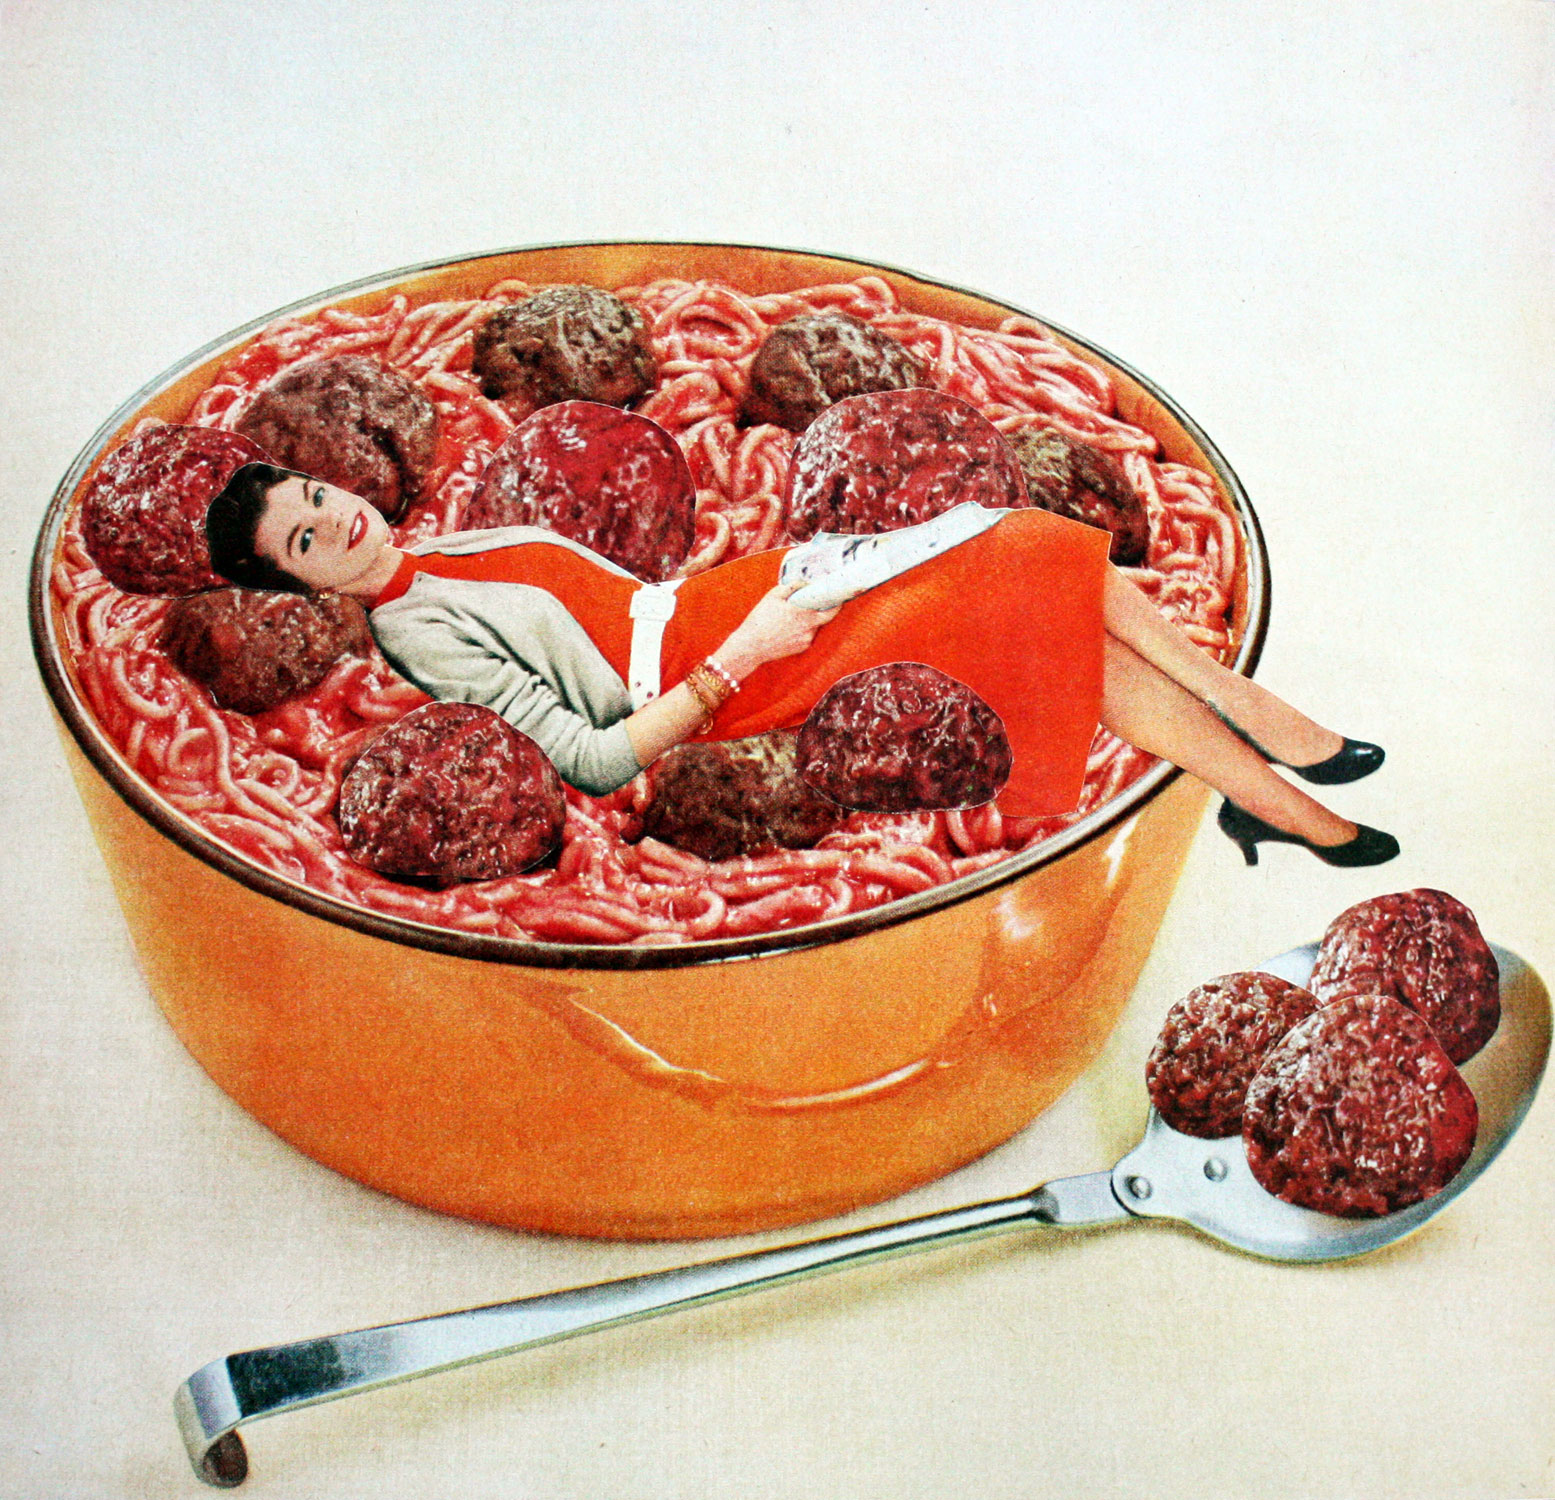 Meatball Life